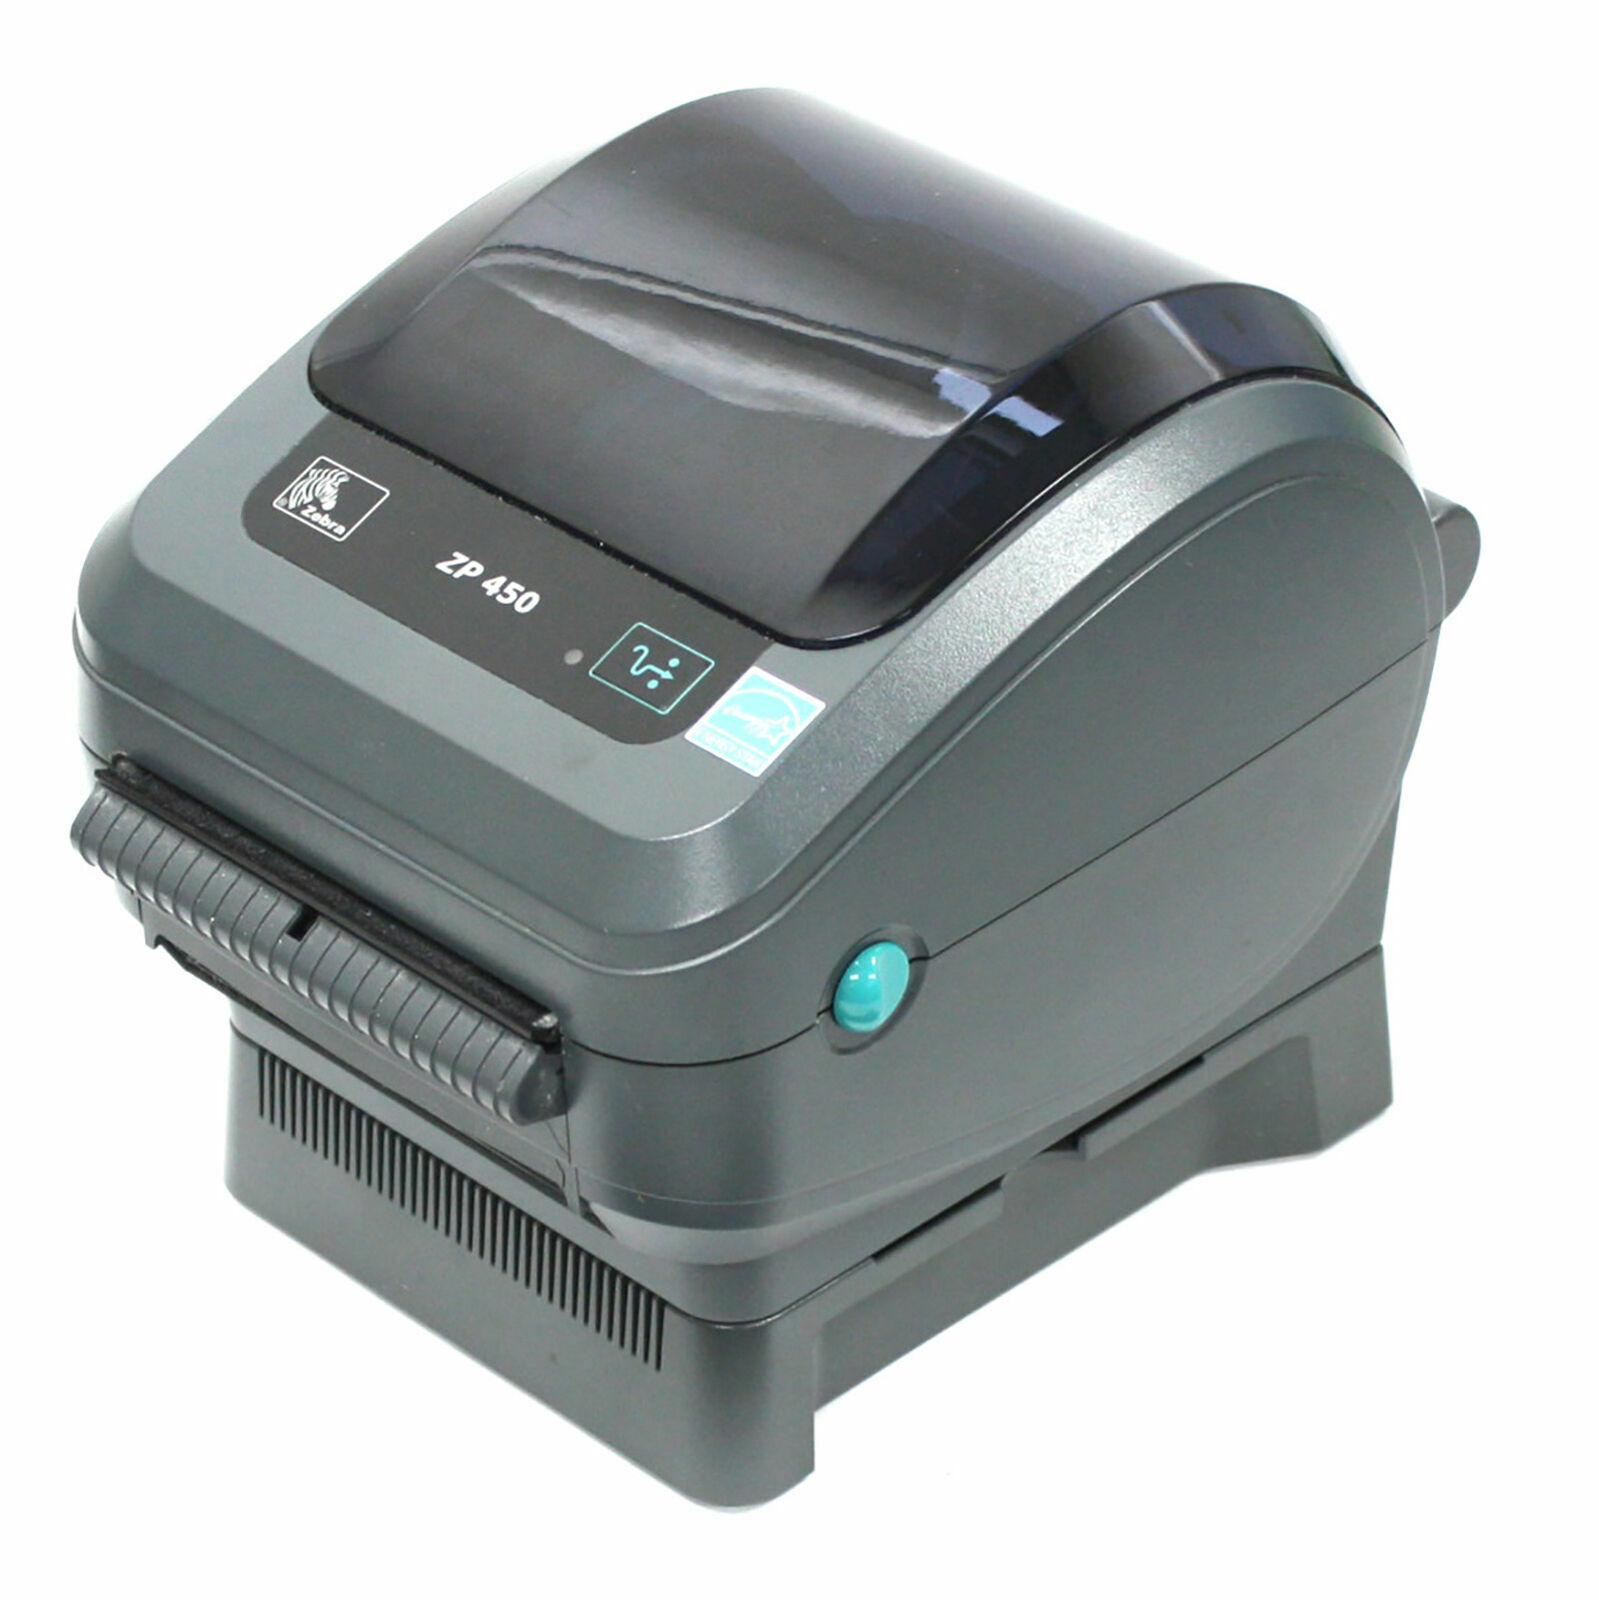 BRAND NEW / IN BOX Zebra ZP450-0502-0004 UPS CTP Label Thermal Printer SEALED